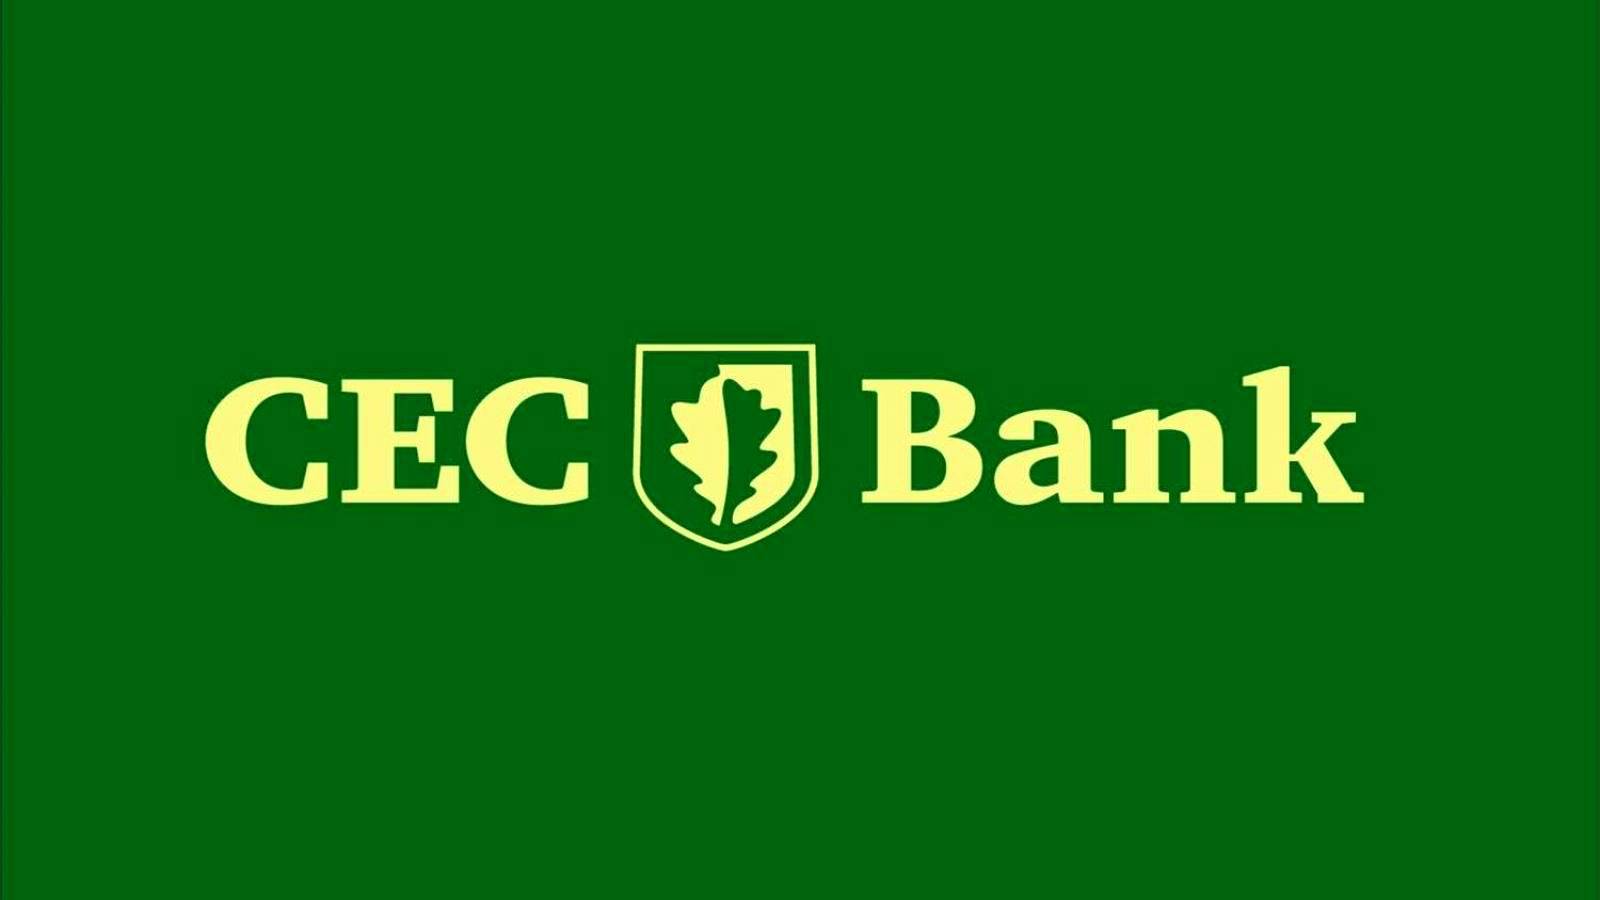 Ilmoitus CEC Bankin suuresta toimenpiteestä, joka on virallisesti vahvistettu kaikille asiakkaille